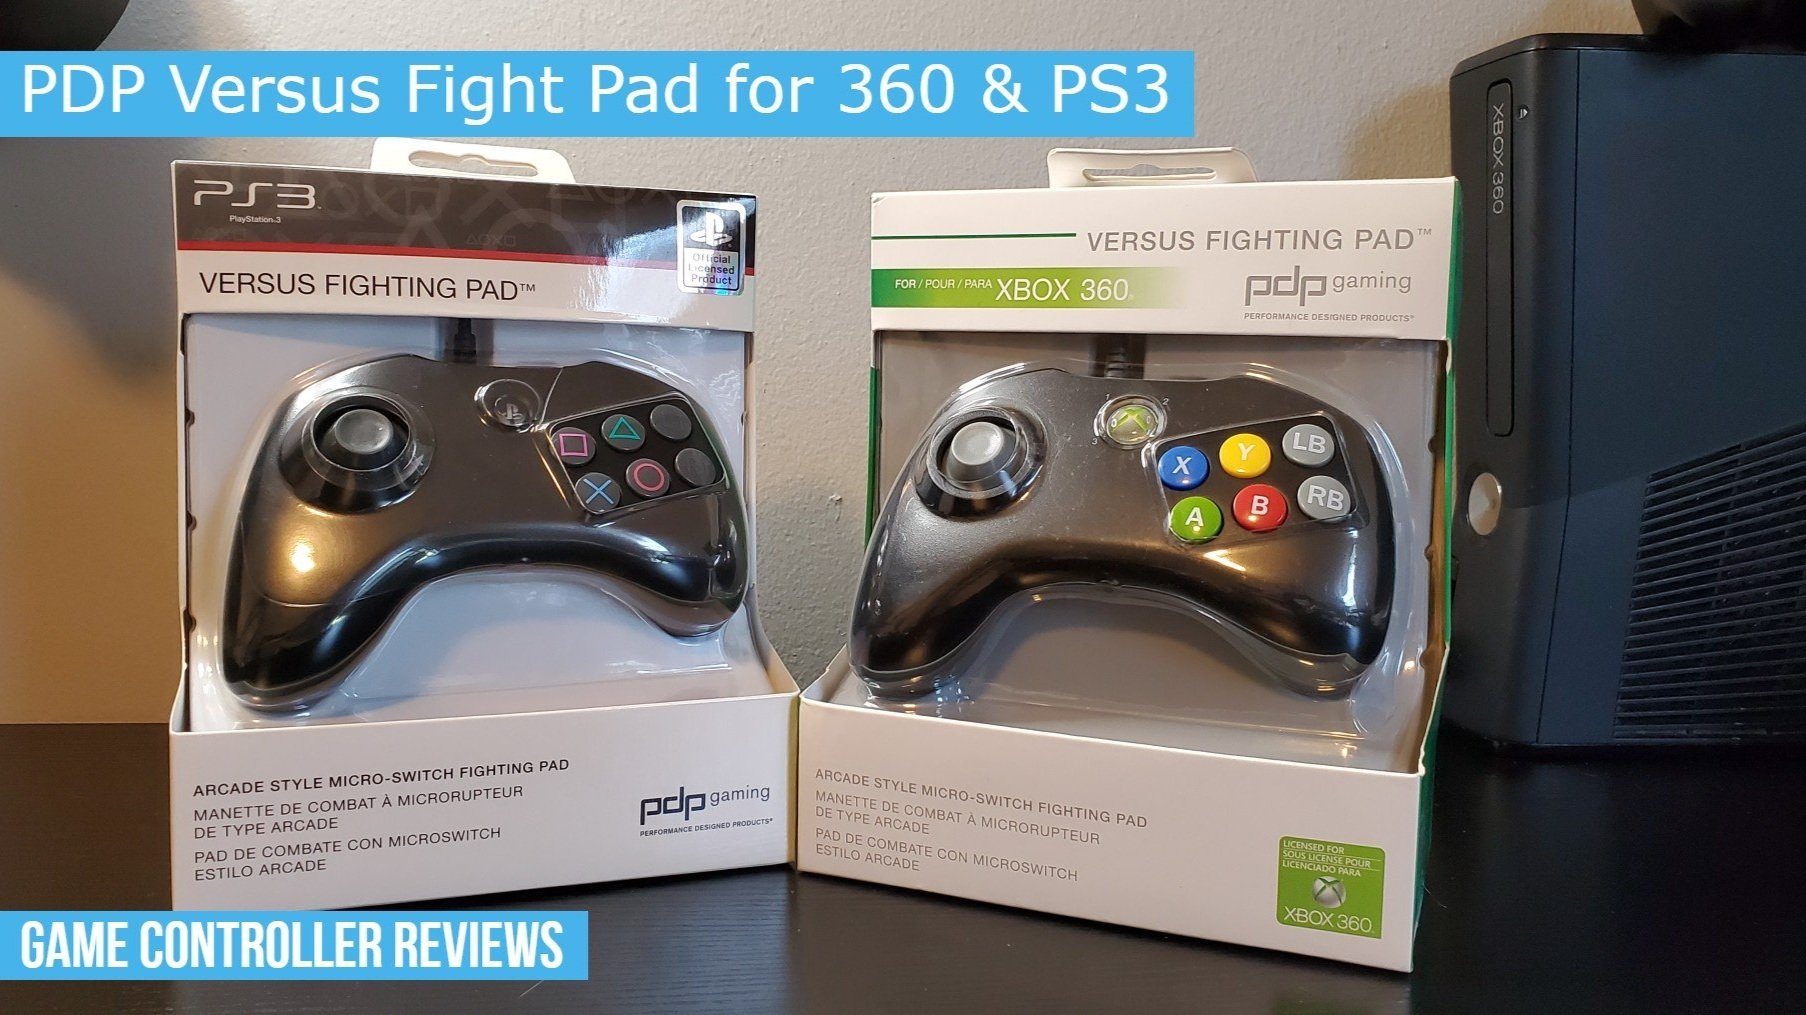 Afkorten Bemiddelaar Snel PDP Versus Fighting Pad Review — Game Controller Reviews